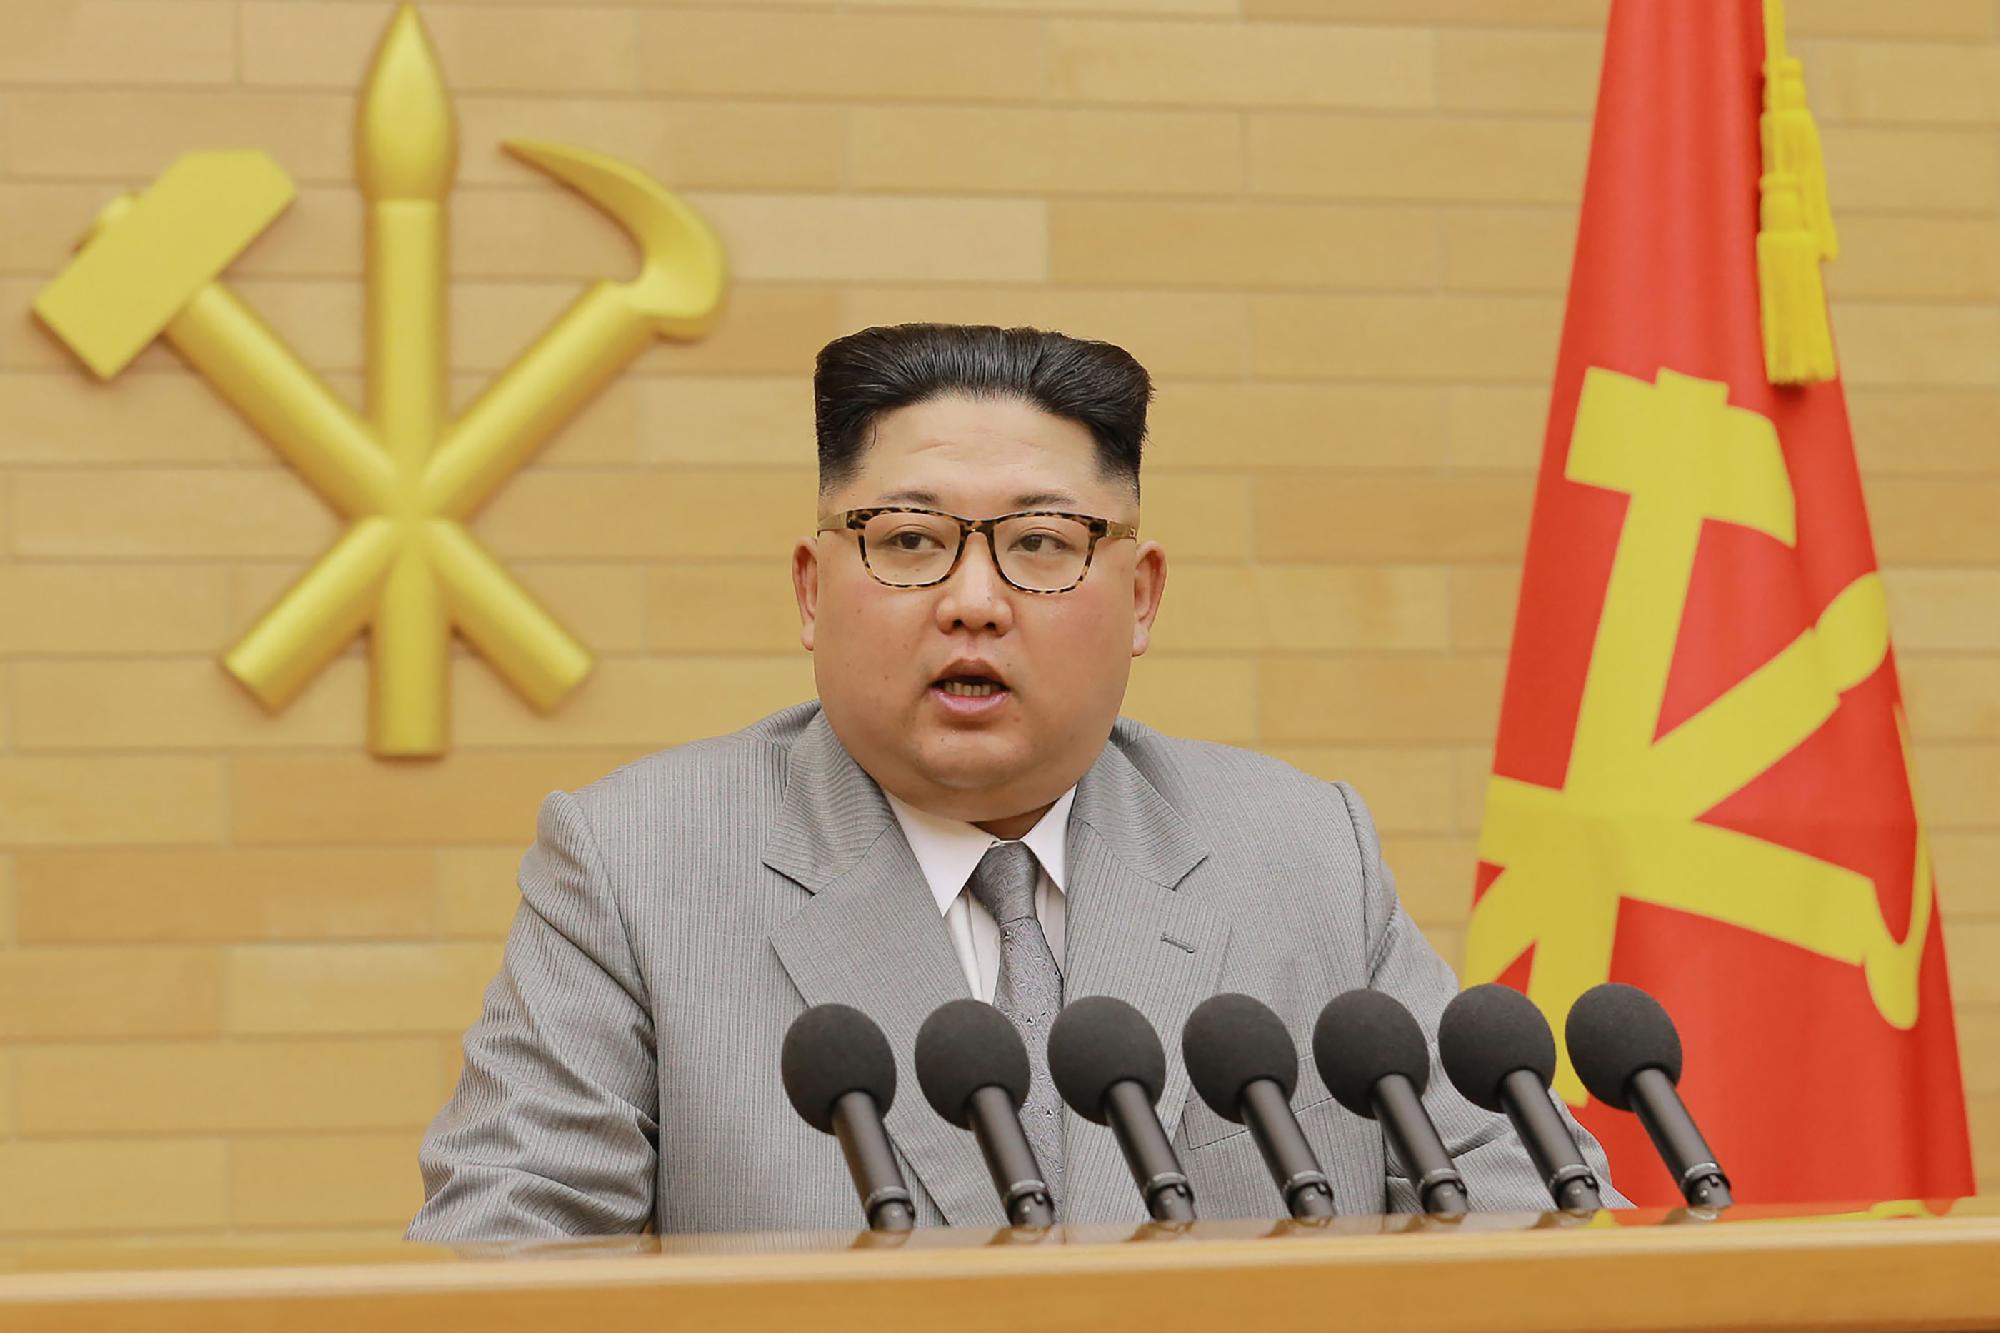 Kim Dzsong Un keményen bírálta az országa elleni szankciókat